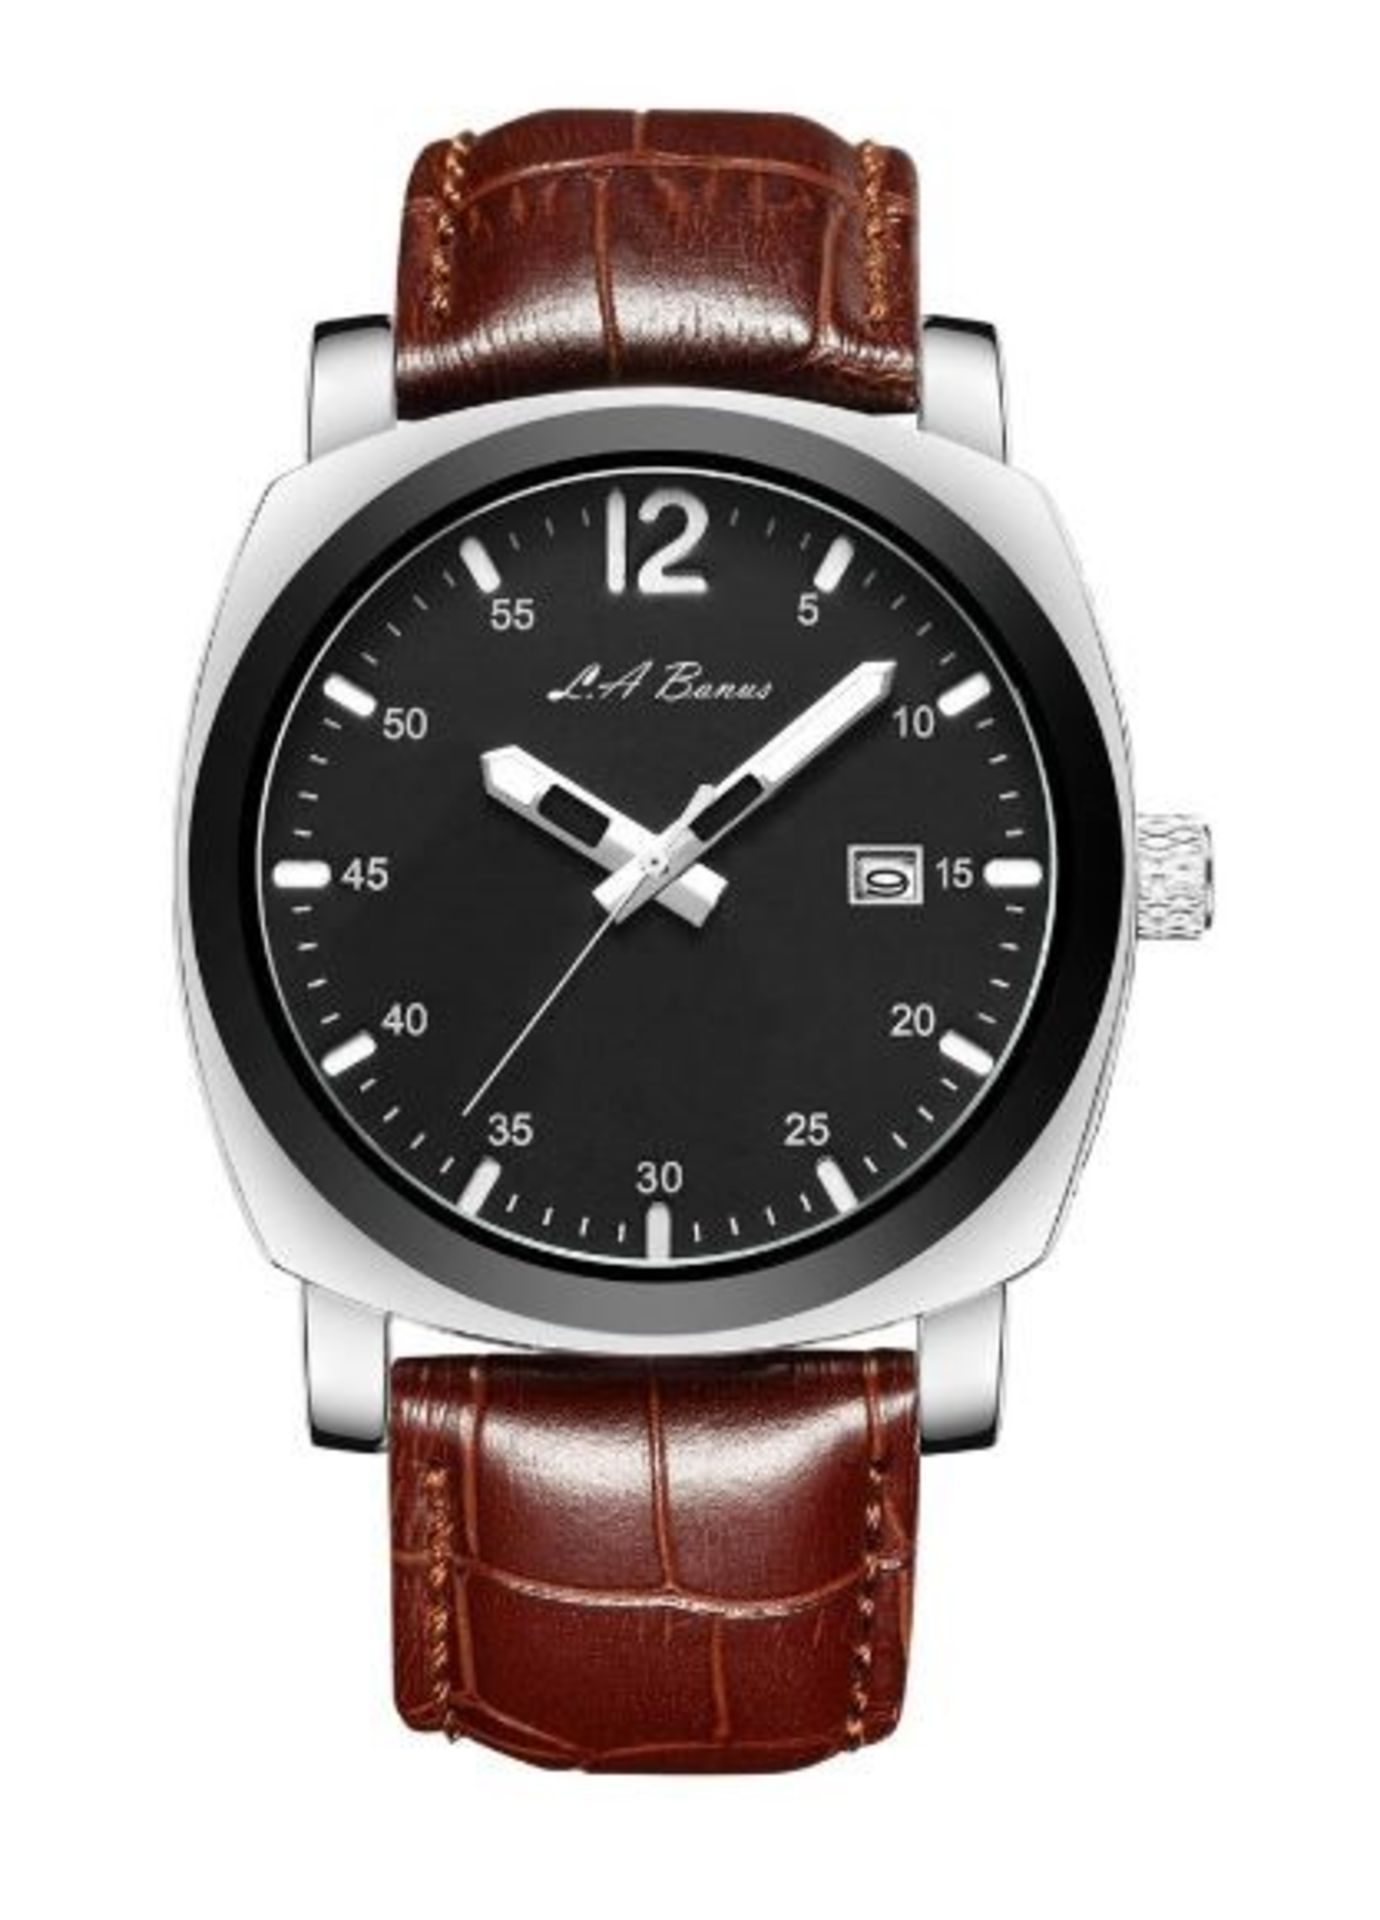 Men’s LA Banus OC Series watch, brown leather strap. Silver colour case. RRP £500